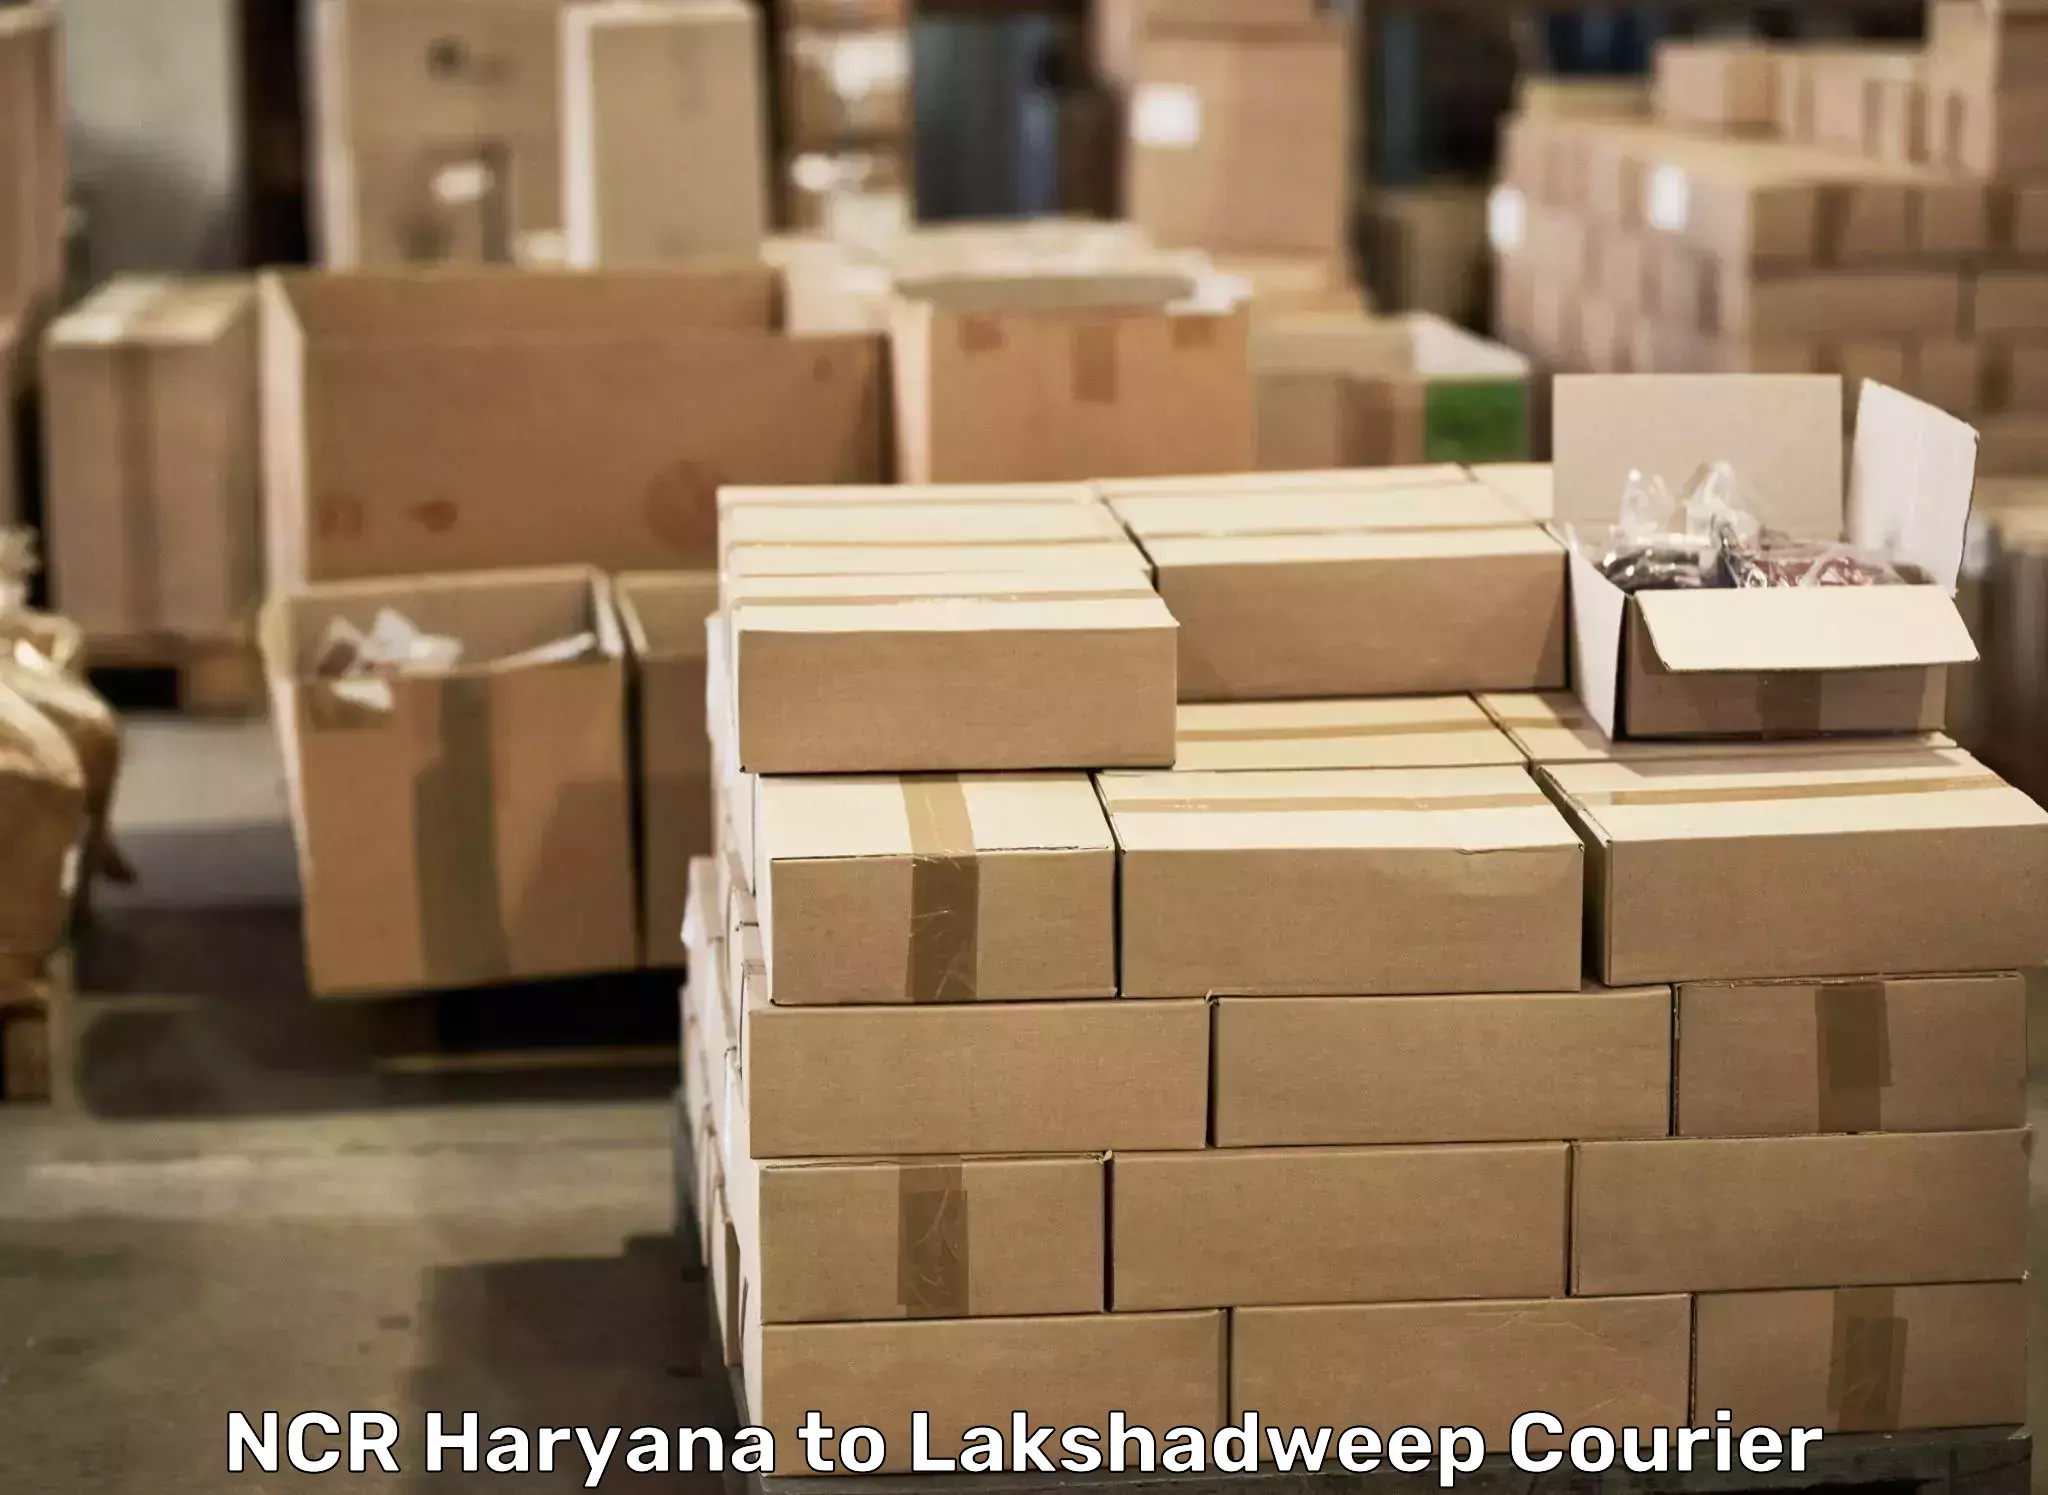 Skilled home shifting NCR Haryana to Lakshadweep